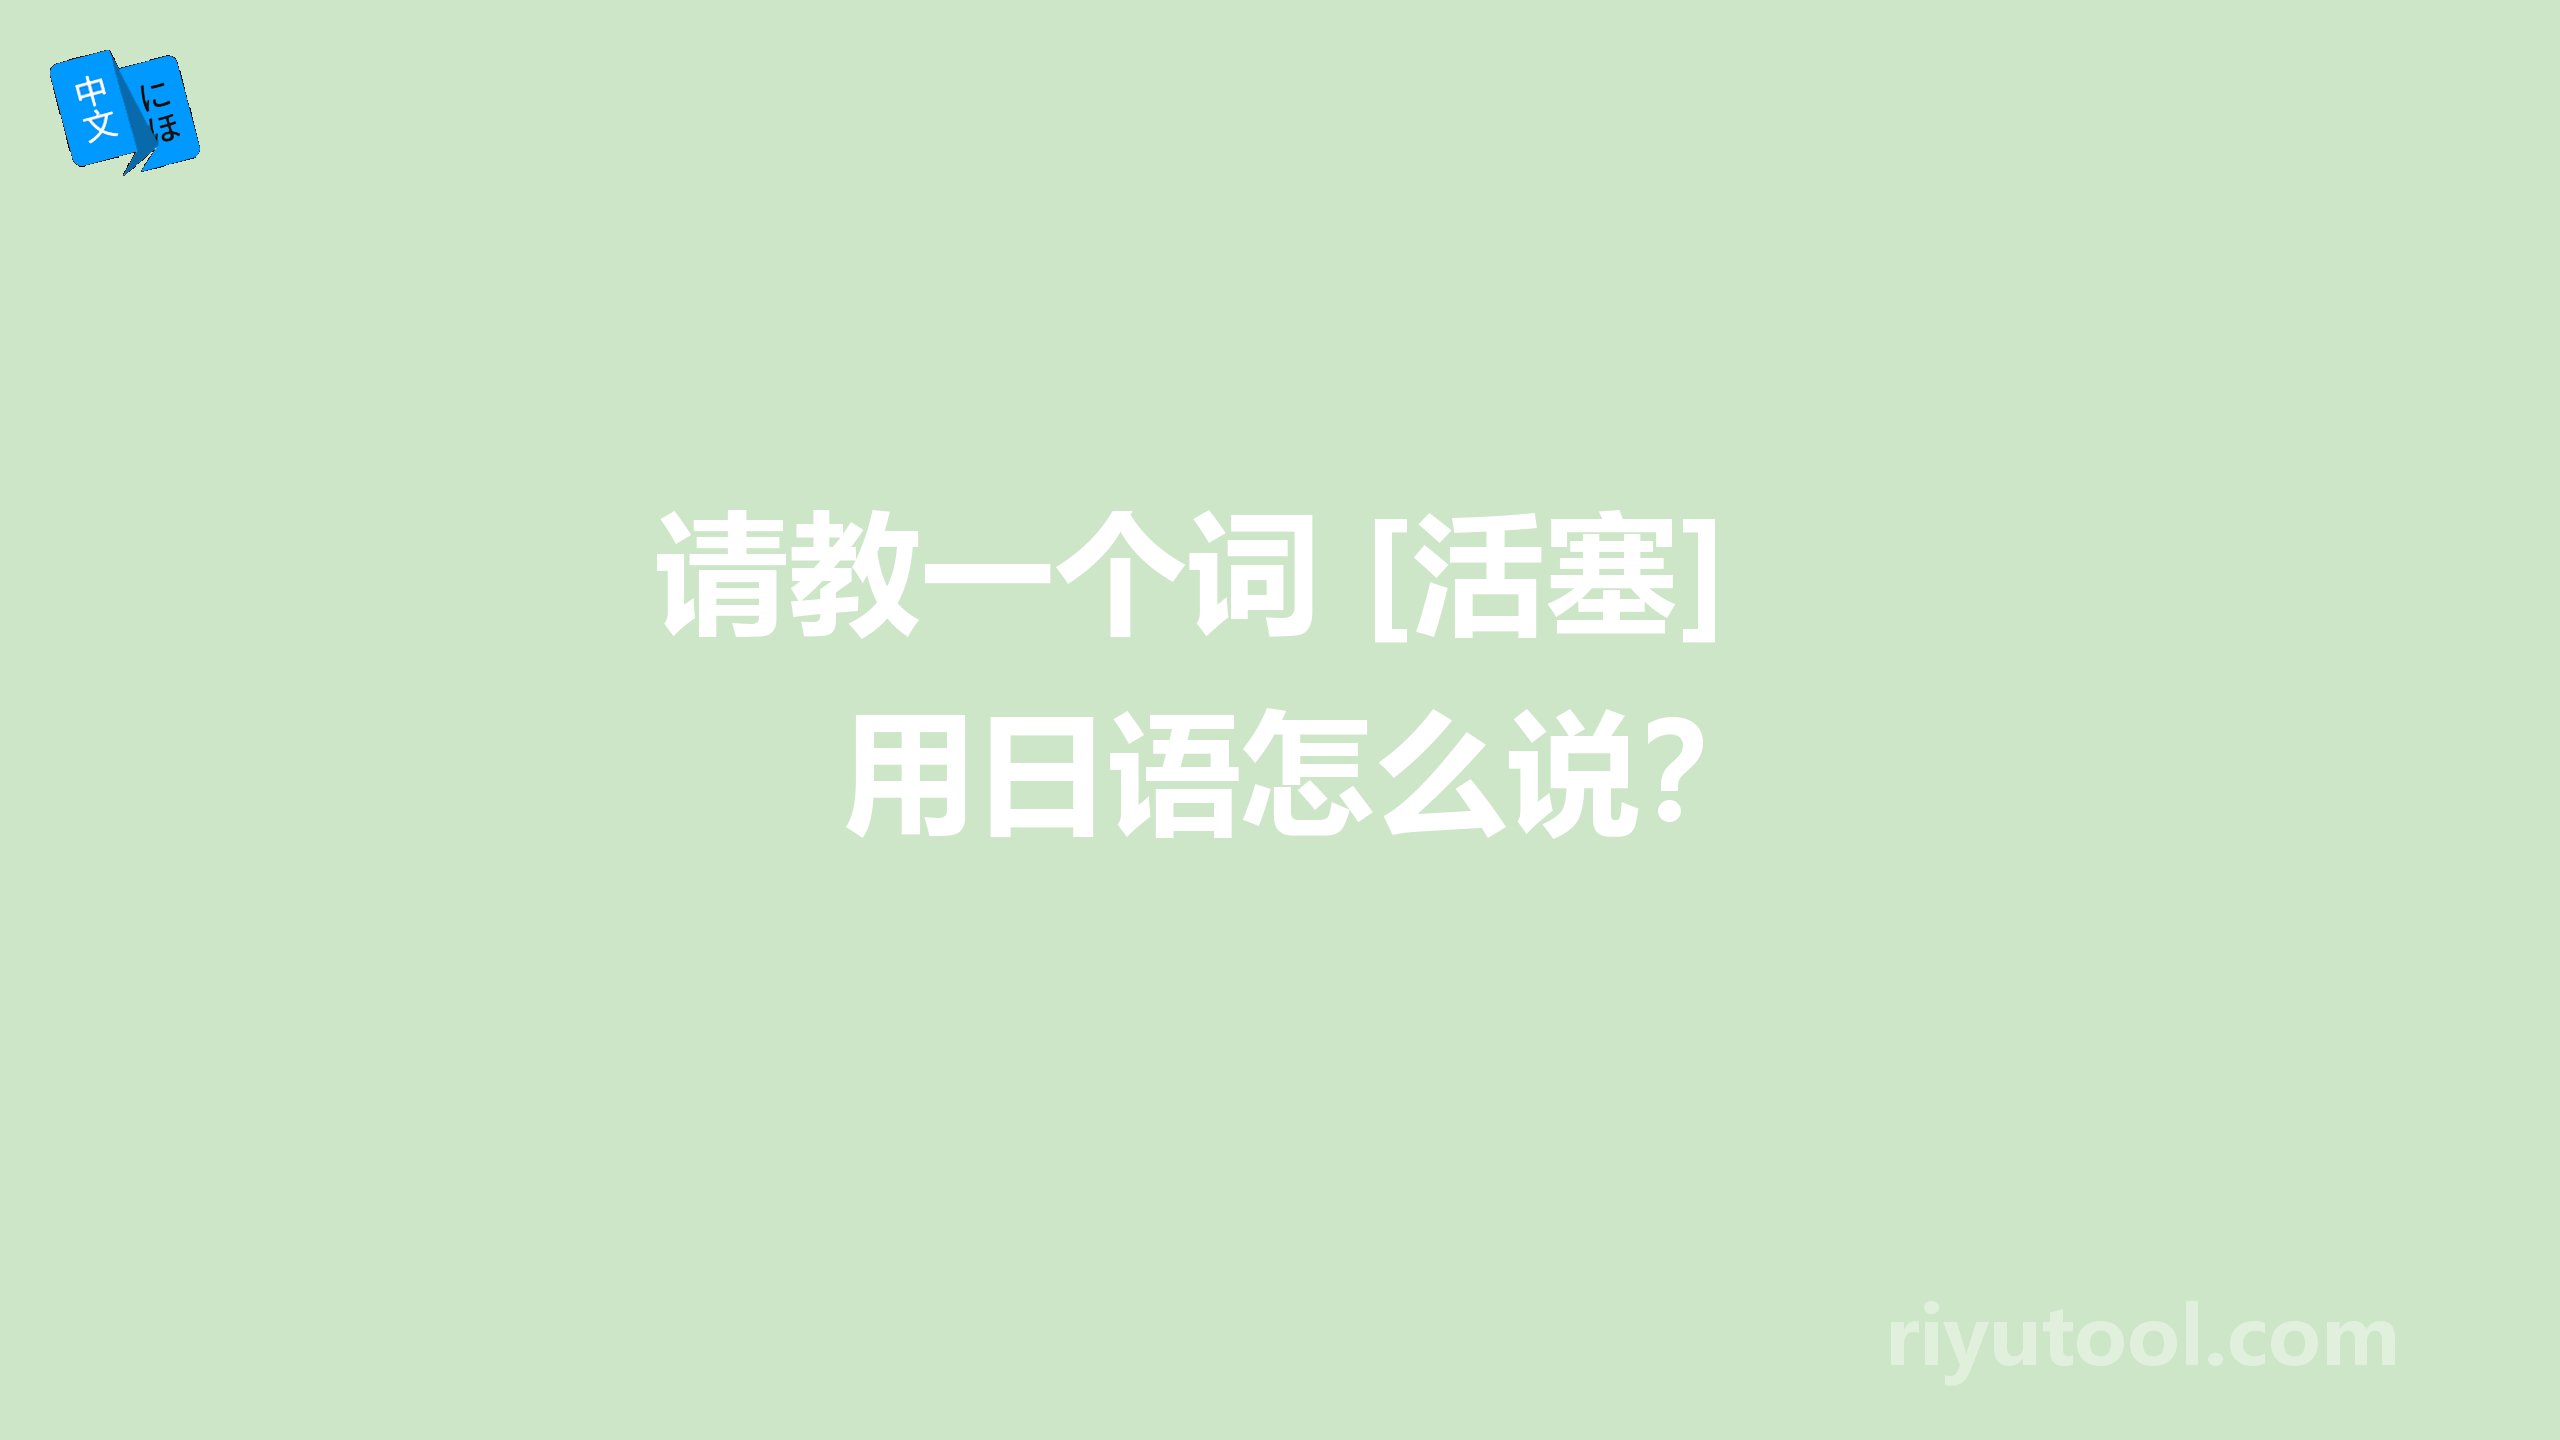 请教一个词 [活塞]用日语怎么说？